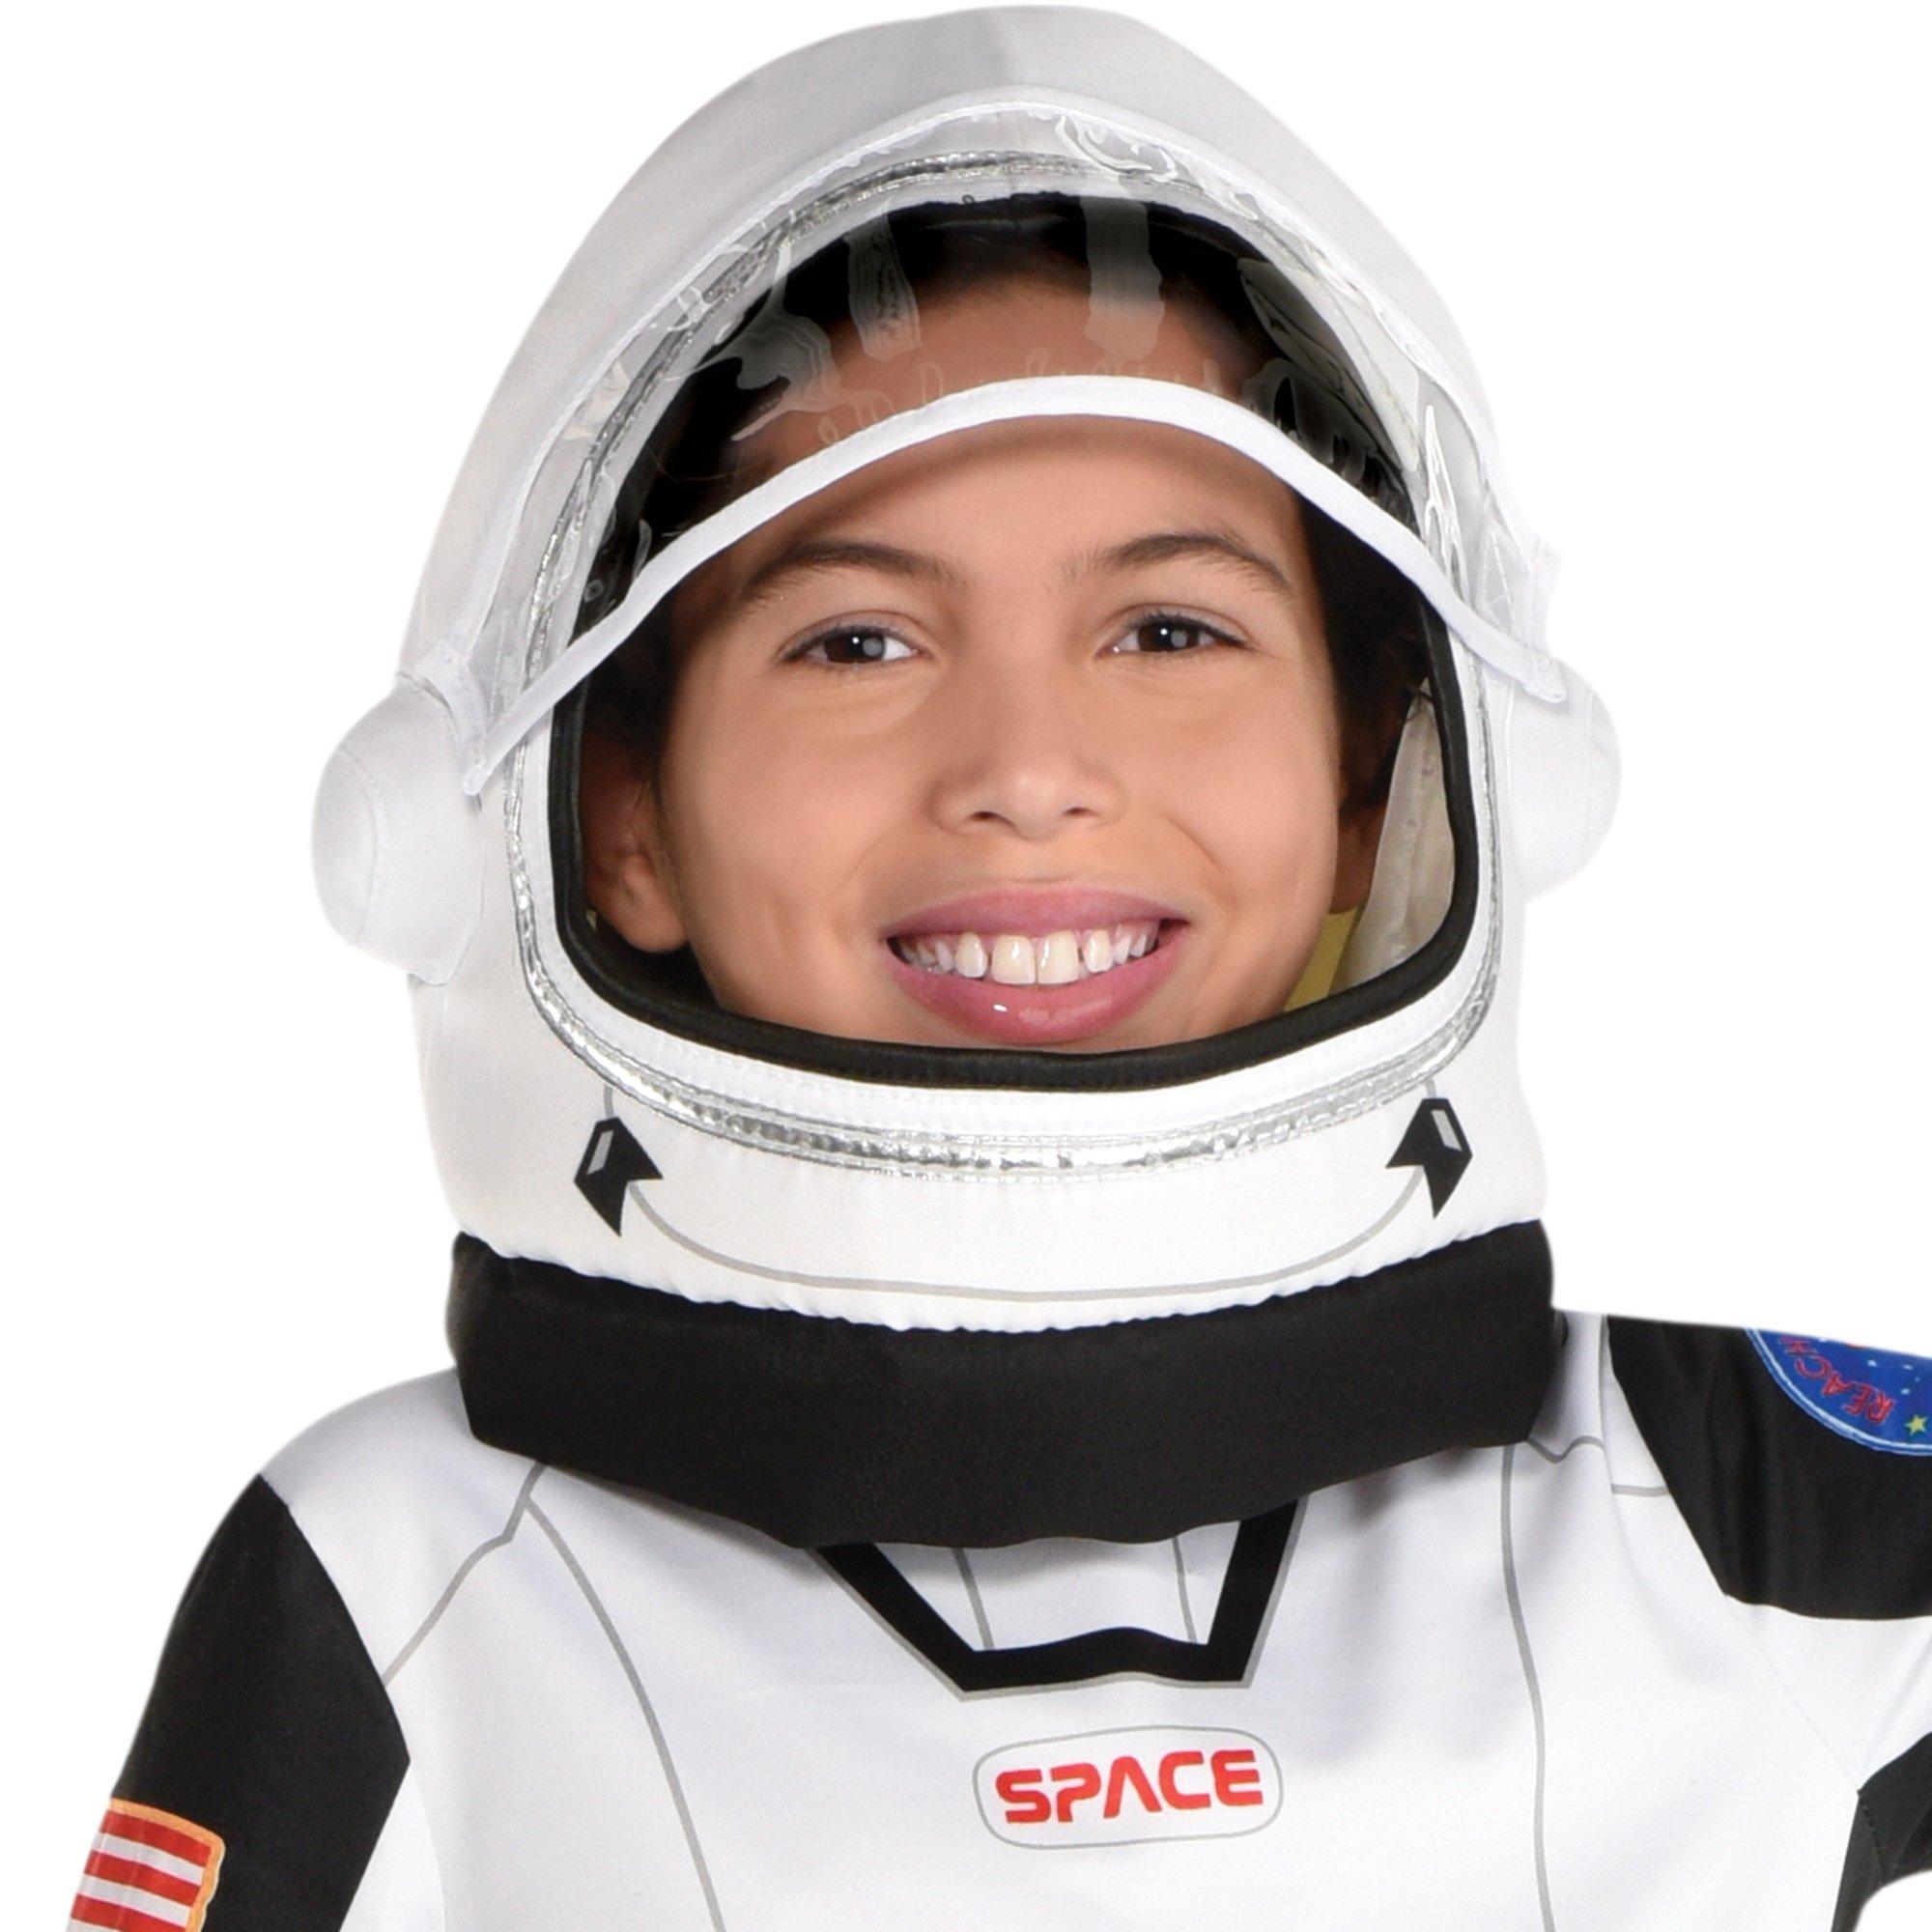 Kids' In-Flight Astronaut Costume